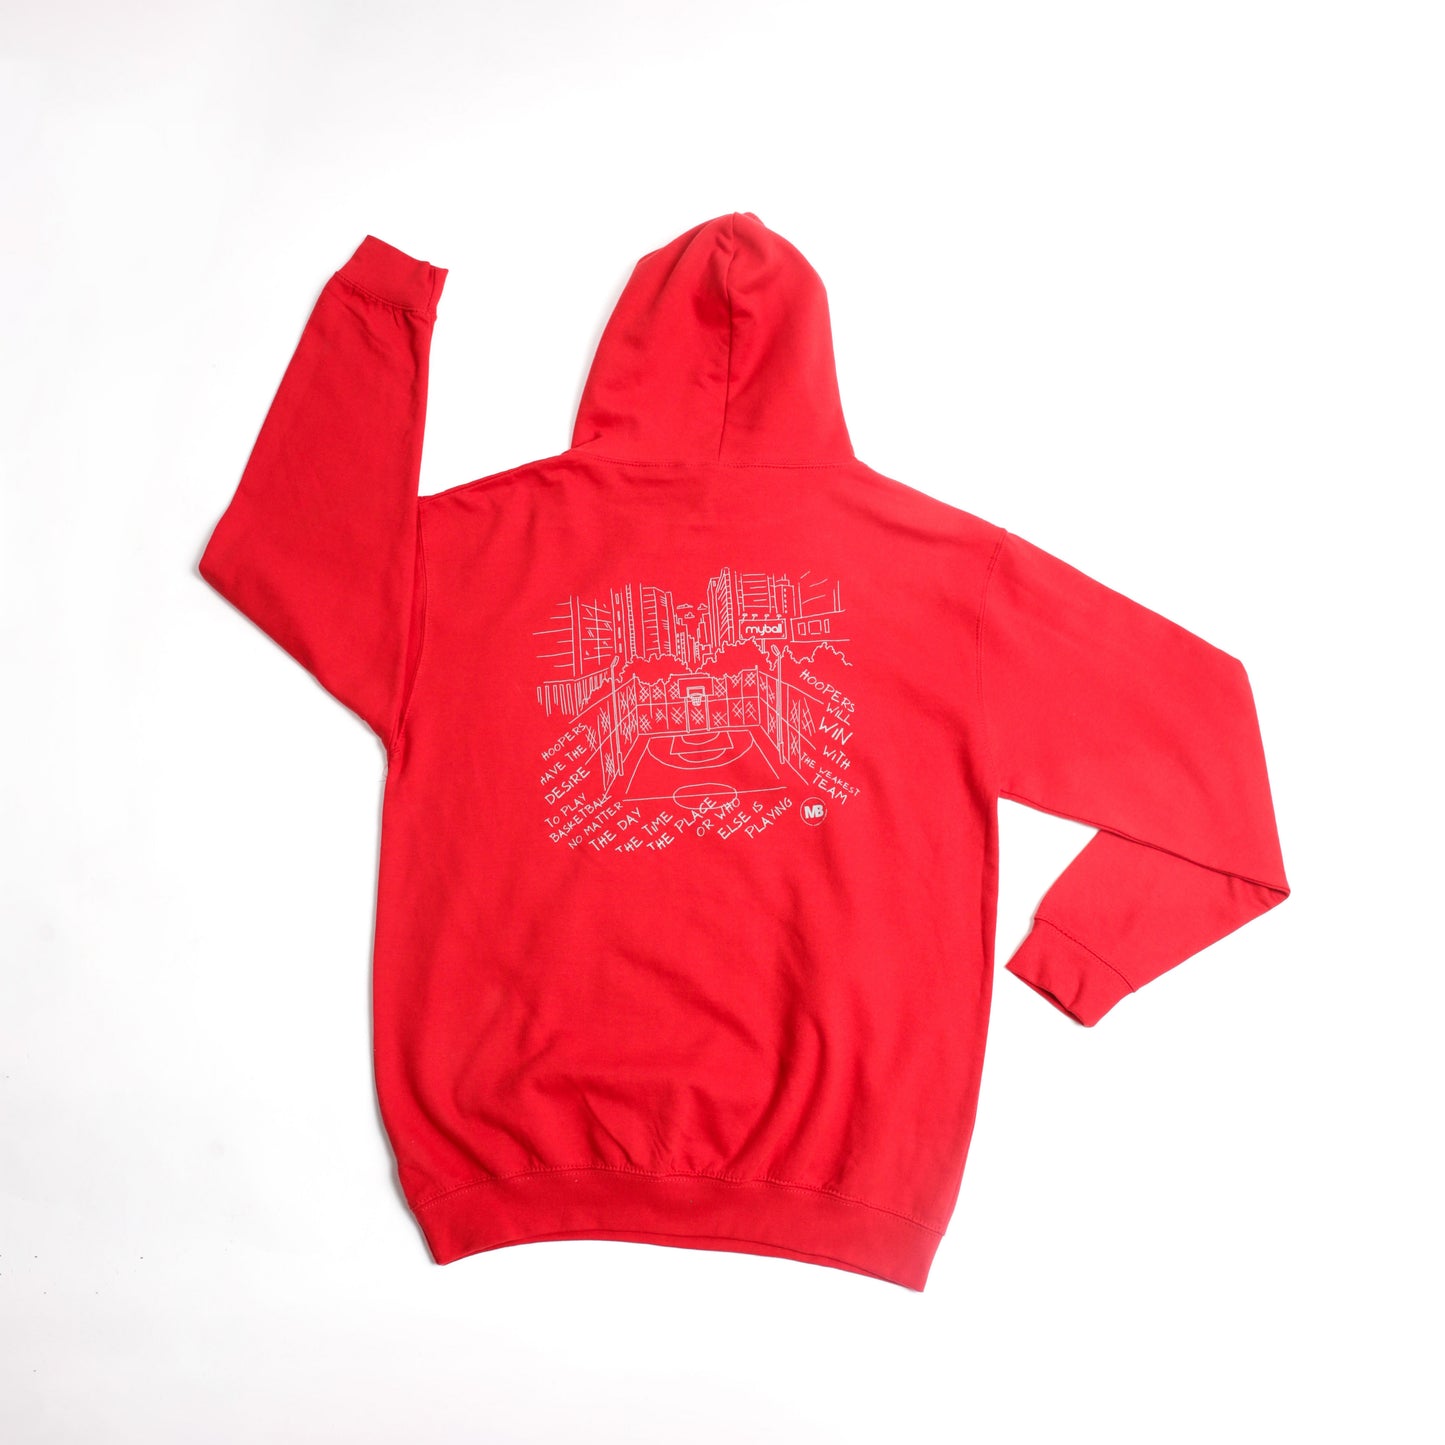 MB HOOPER hoodie | 4 colors